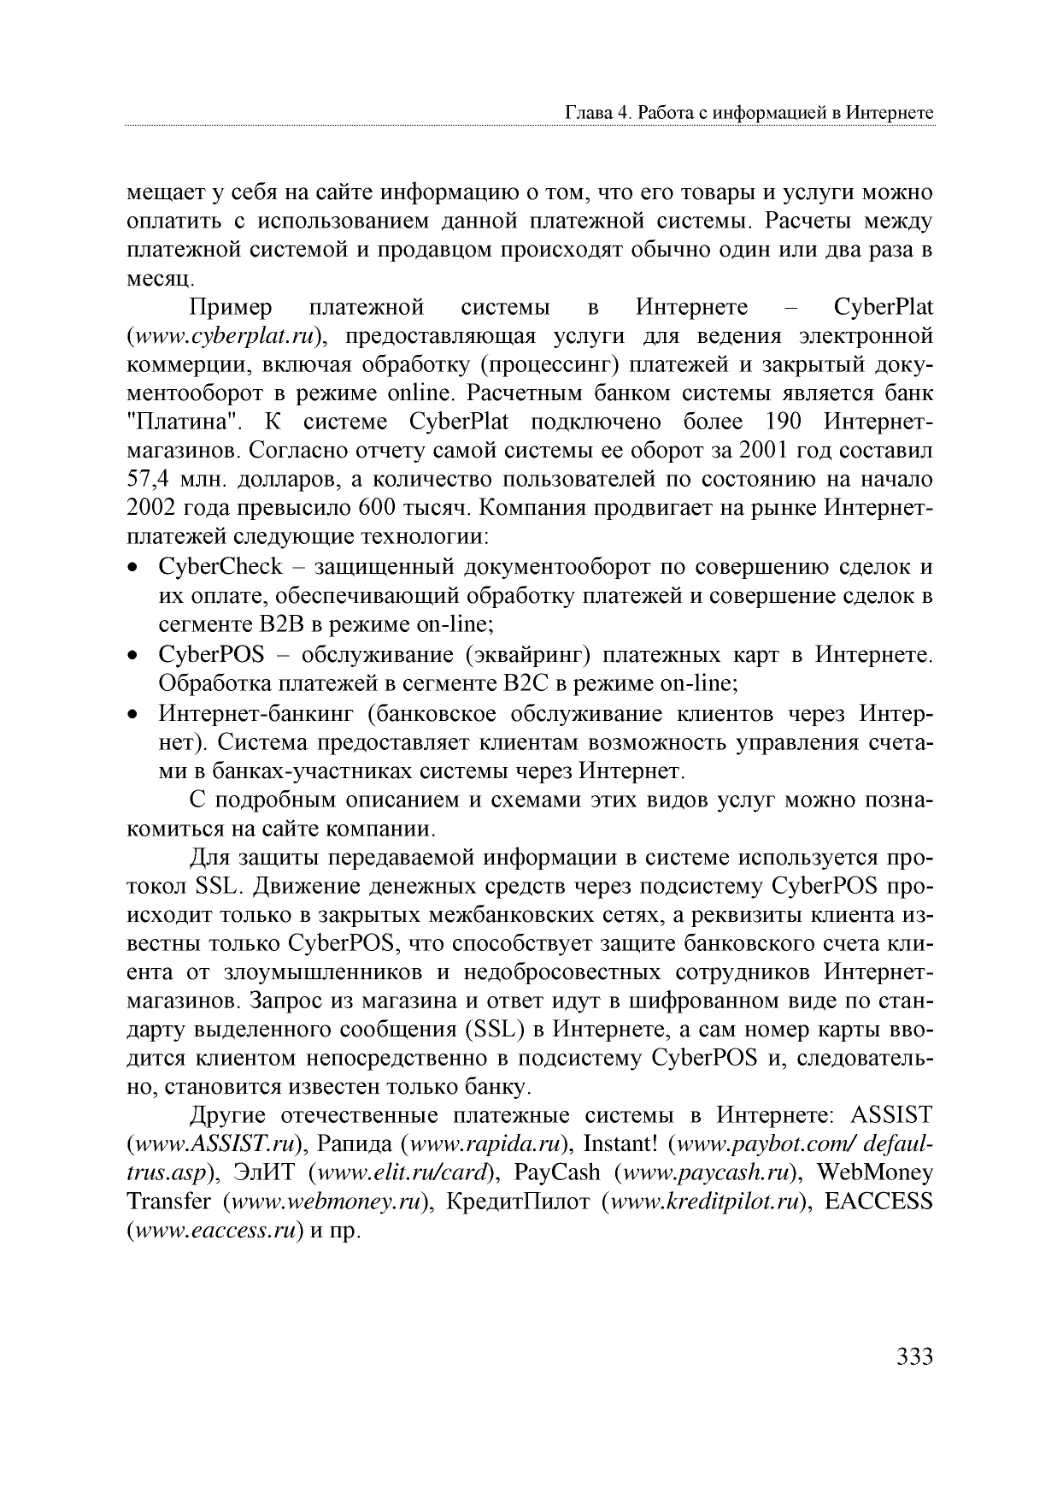 Informatika_Uchebnik_dlya_vuzov_2010 333